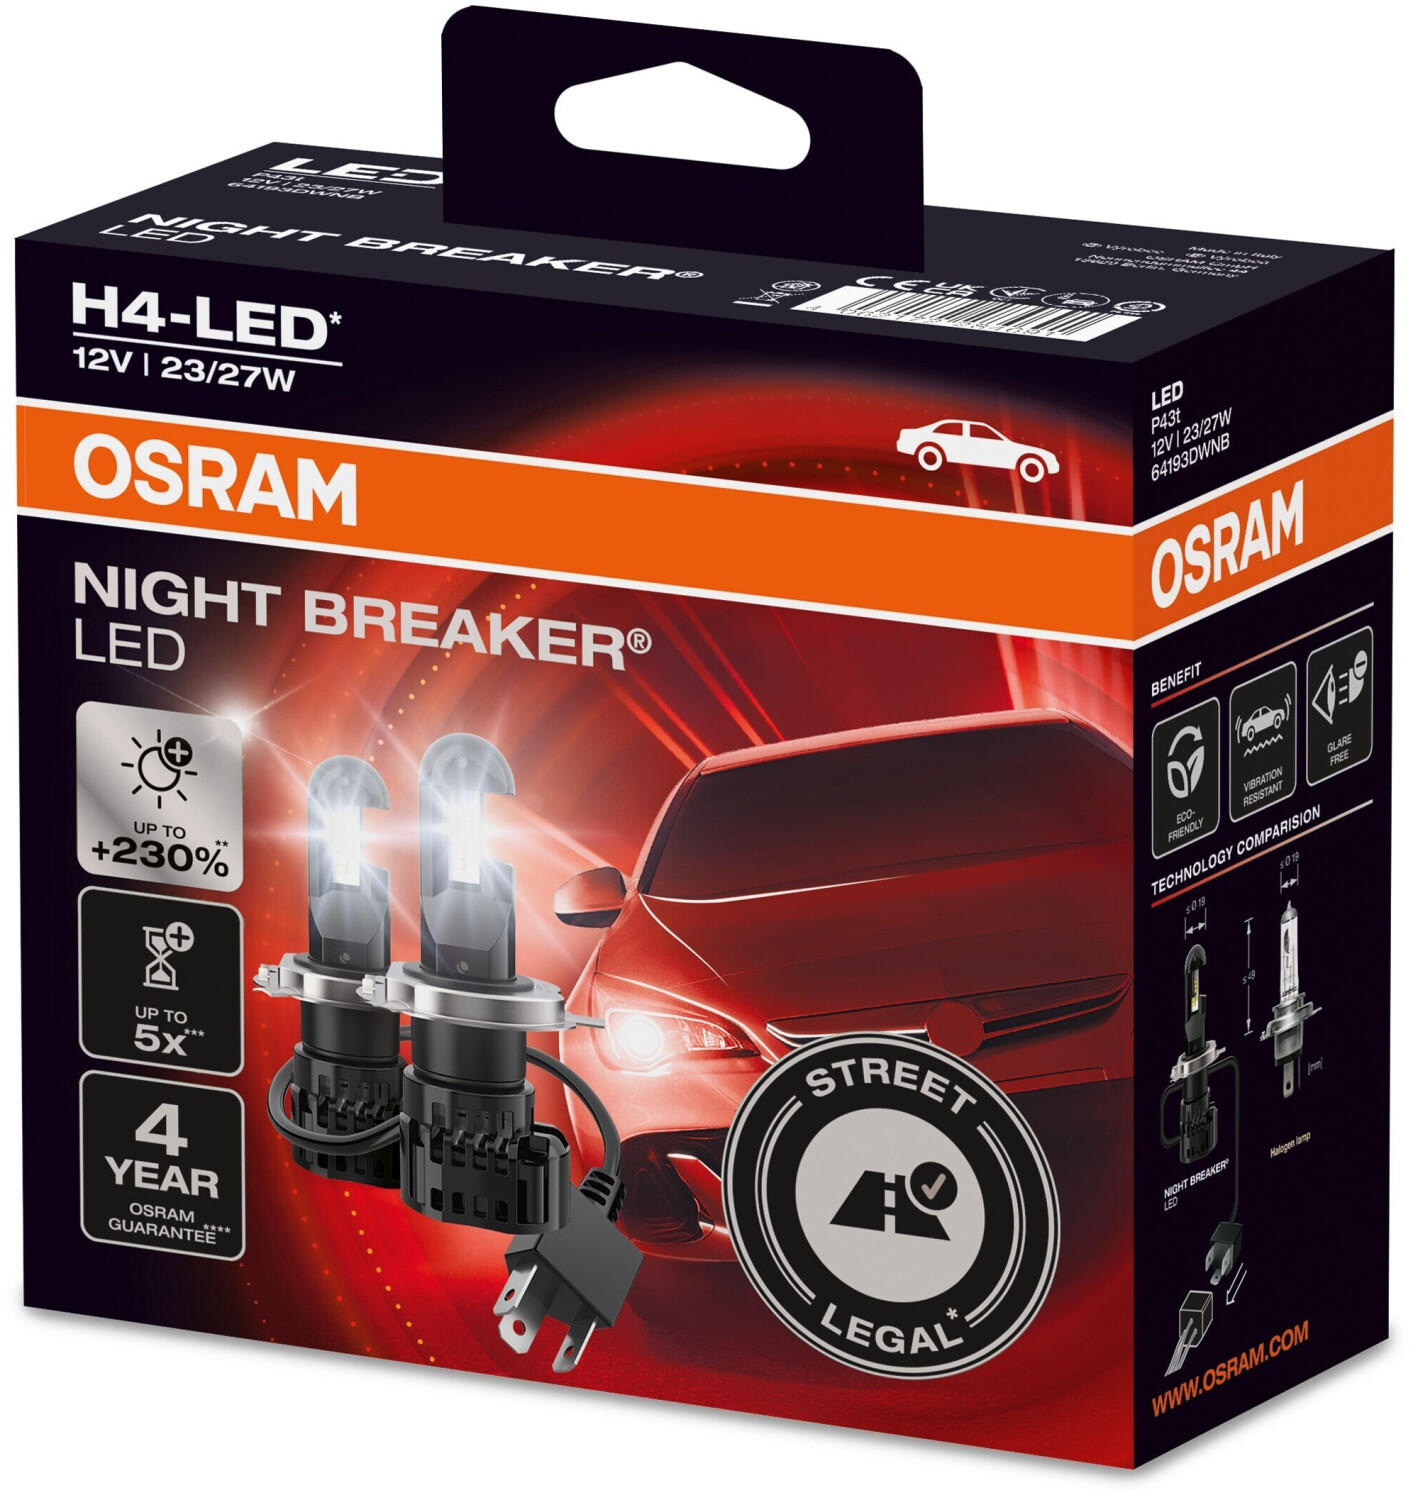 Osram Night Breaker H4-LED (64193DWNB) Erfahrungen 3.9/5 Sternen